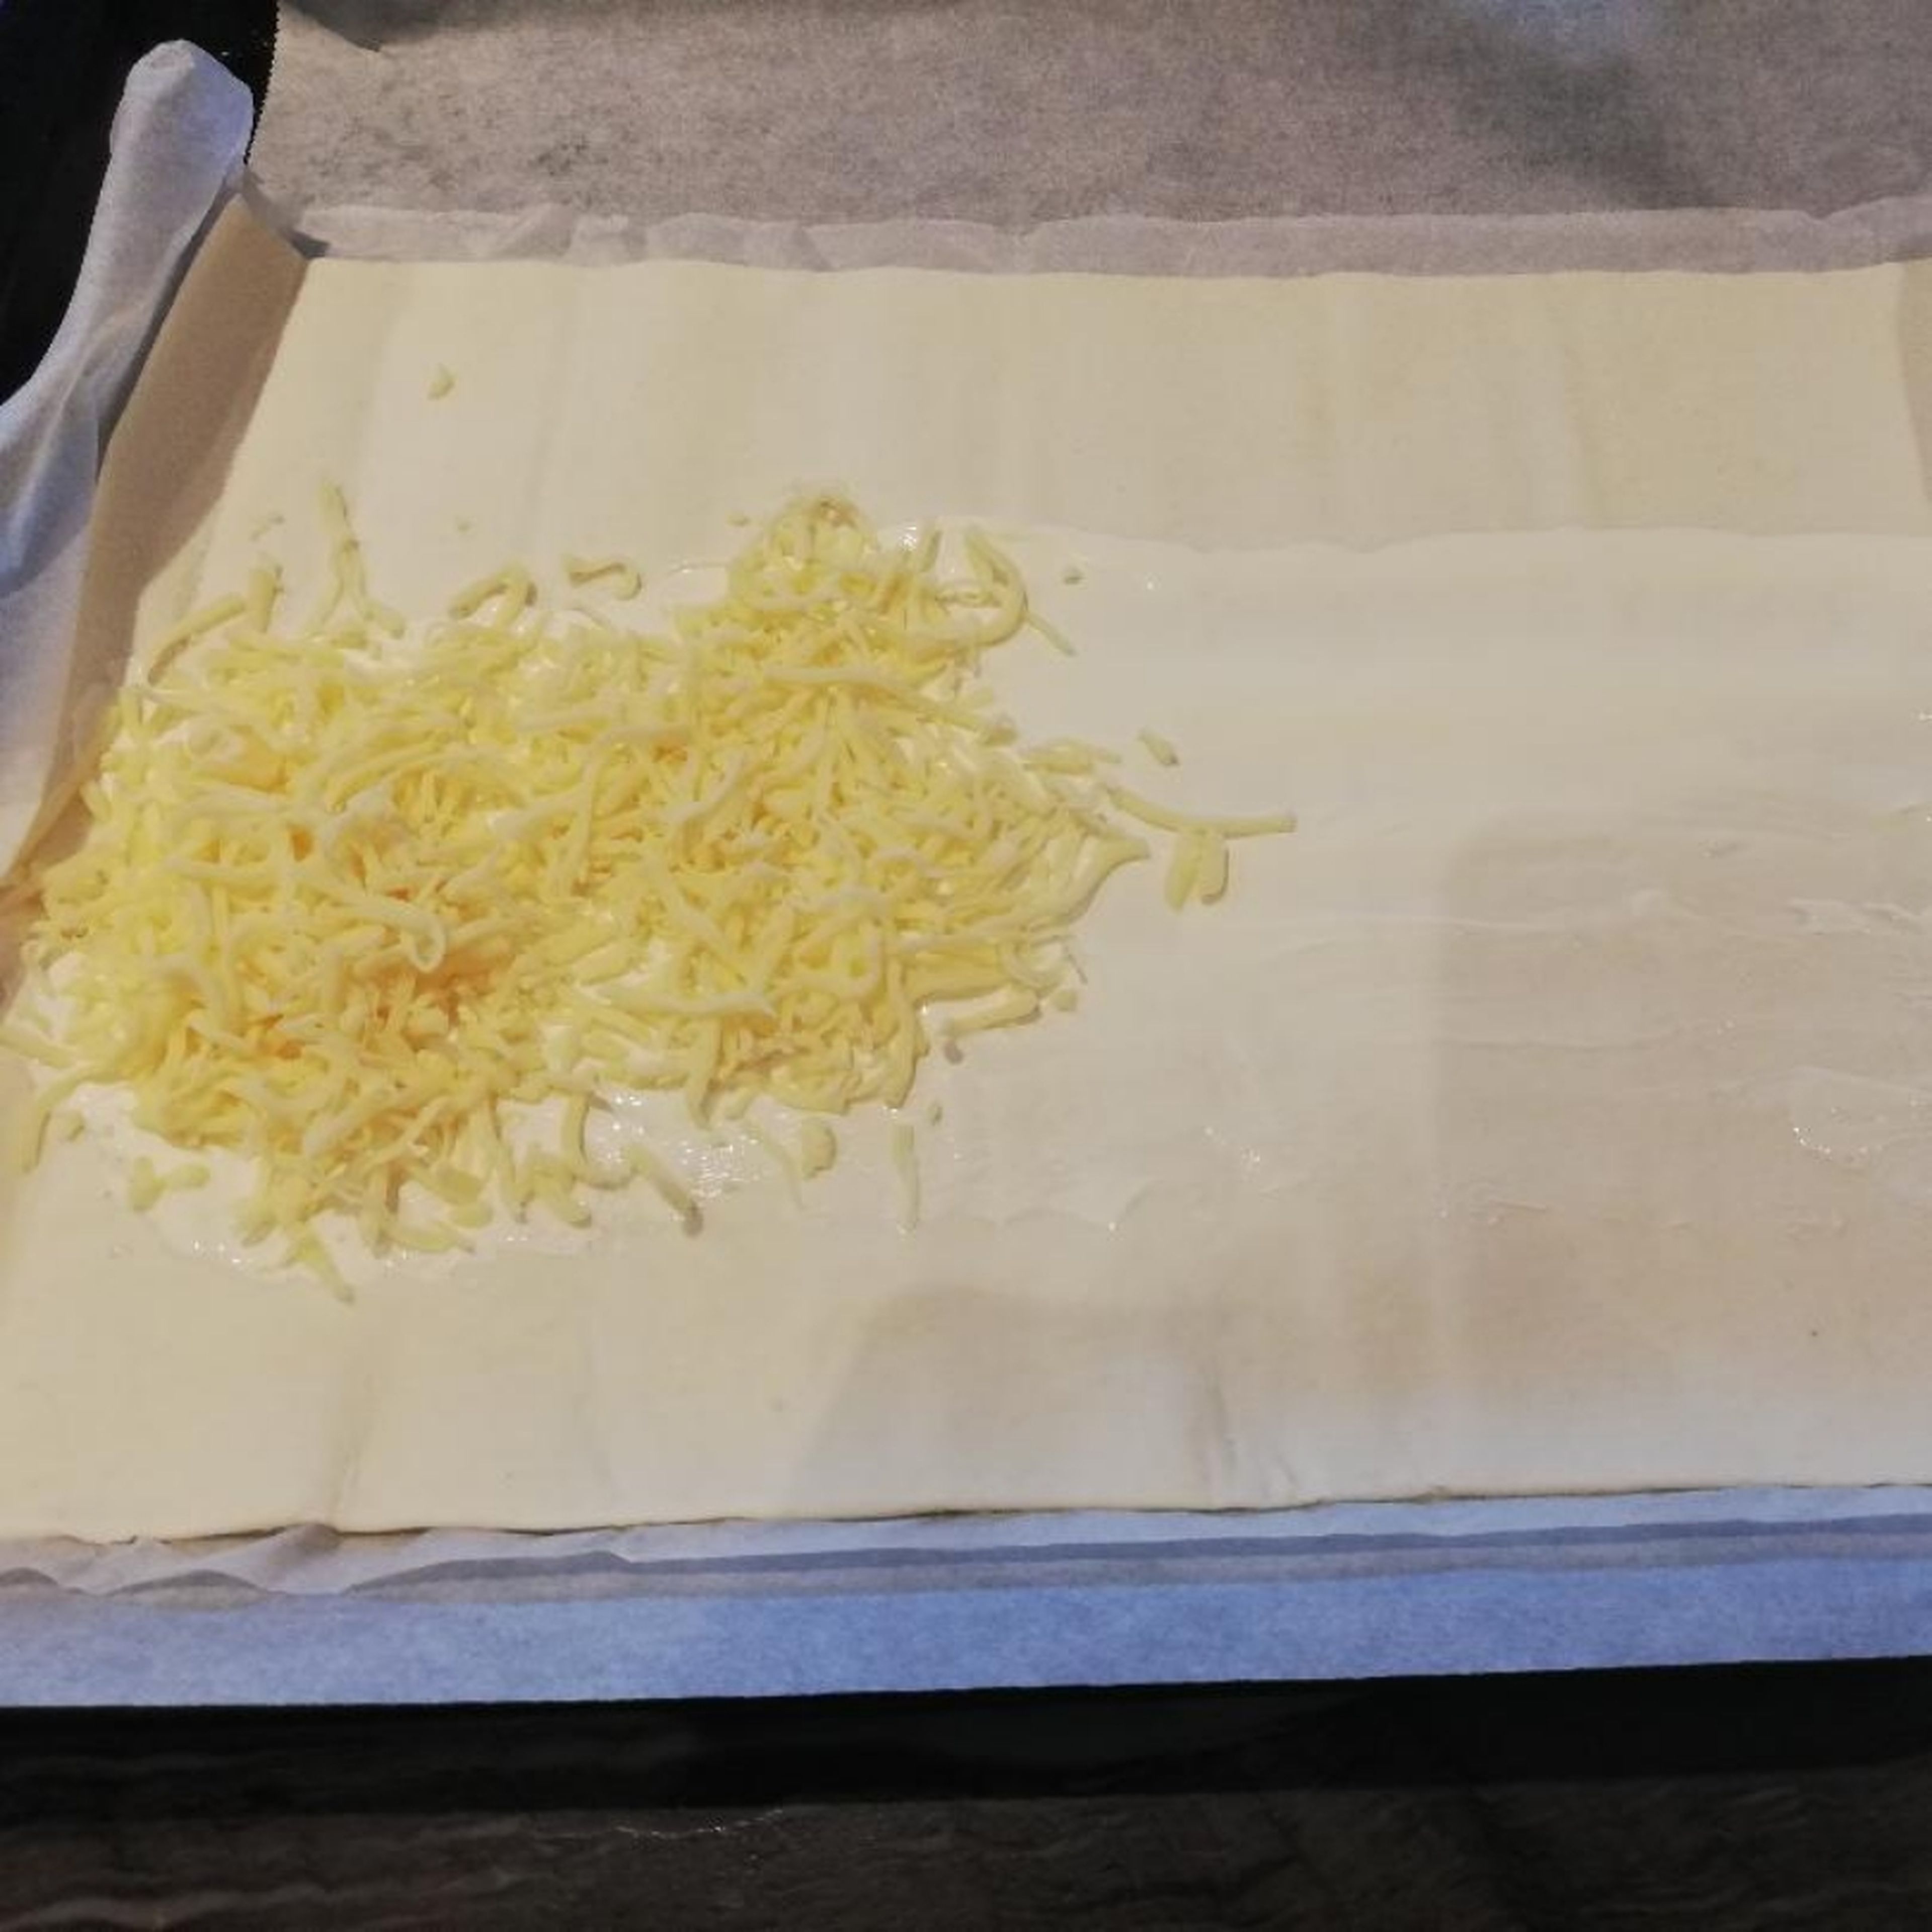 Ofen auf Ober-/Unterhitze 180°Grad stellen. Blätterteig ausrollen. Mit Creme Fraiche bestreichen und Käse bestreuen.